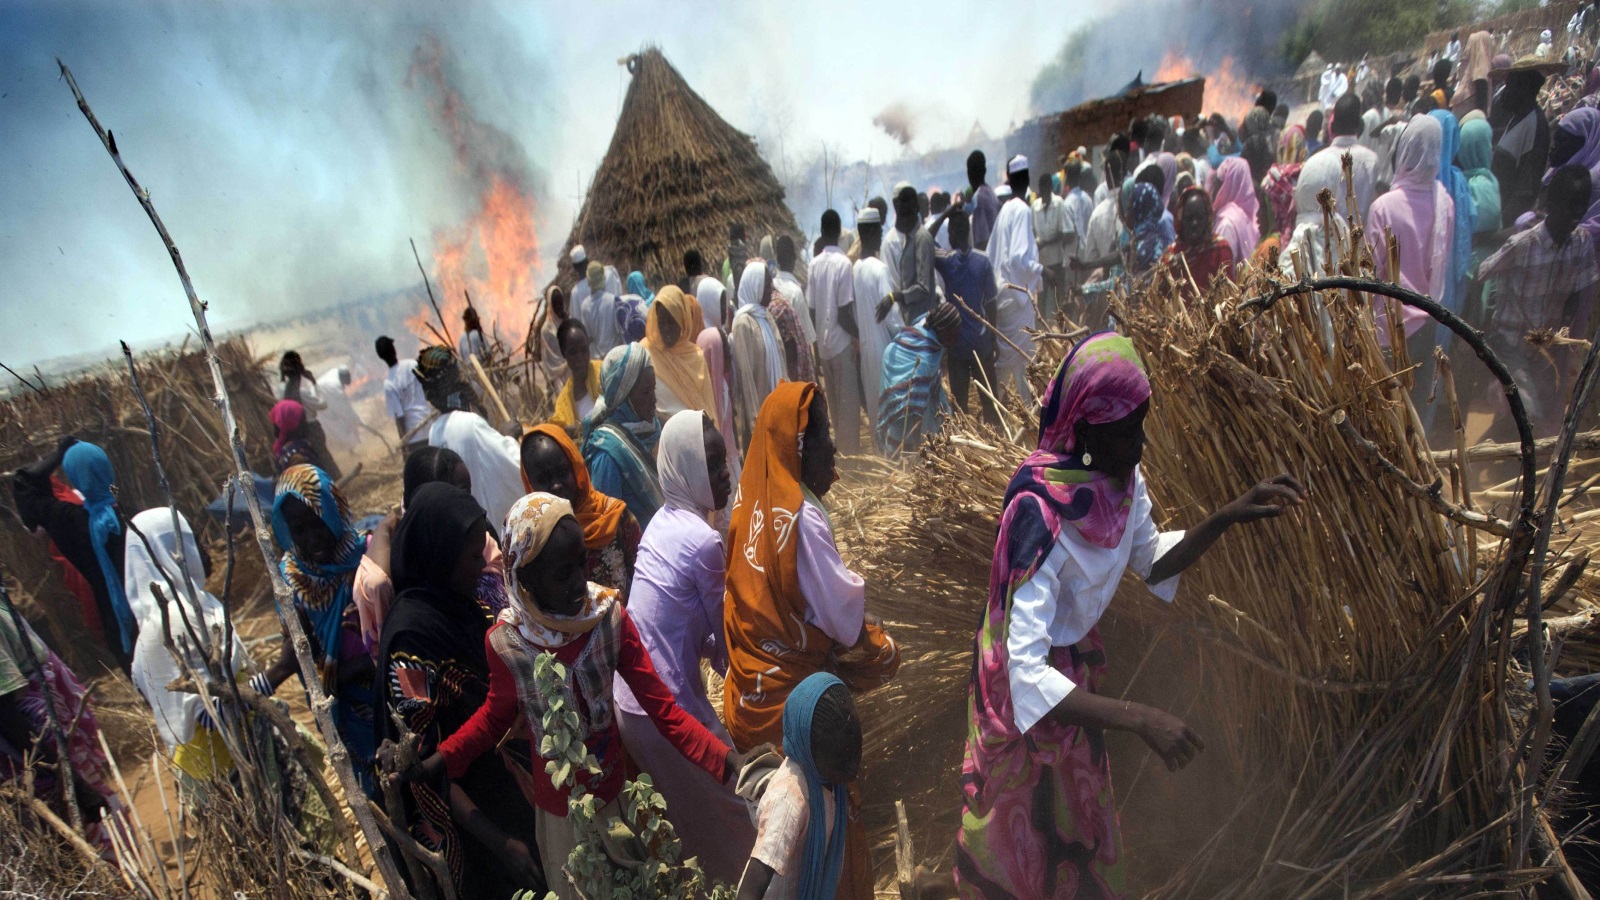 الصراع في الشرق نتج عن التهميش الذي تعرض له الإقليم من الحكومة المركزية، فمنذ استقلال السودان والشرق يعاني الافتقار إلى البُنى التحتية وإلى التعليم والصحة والرعاية الاجتماعية.